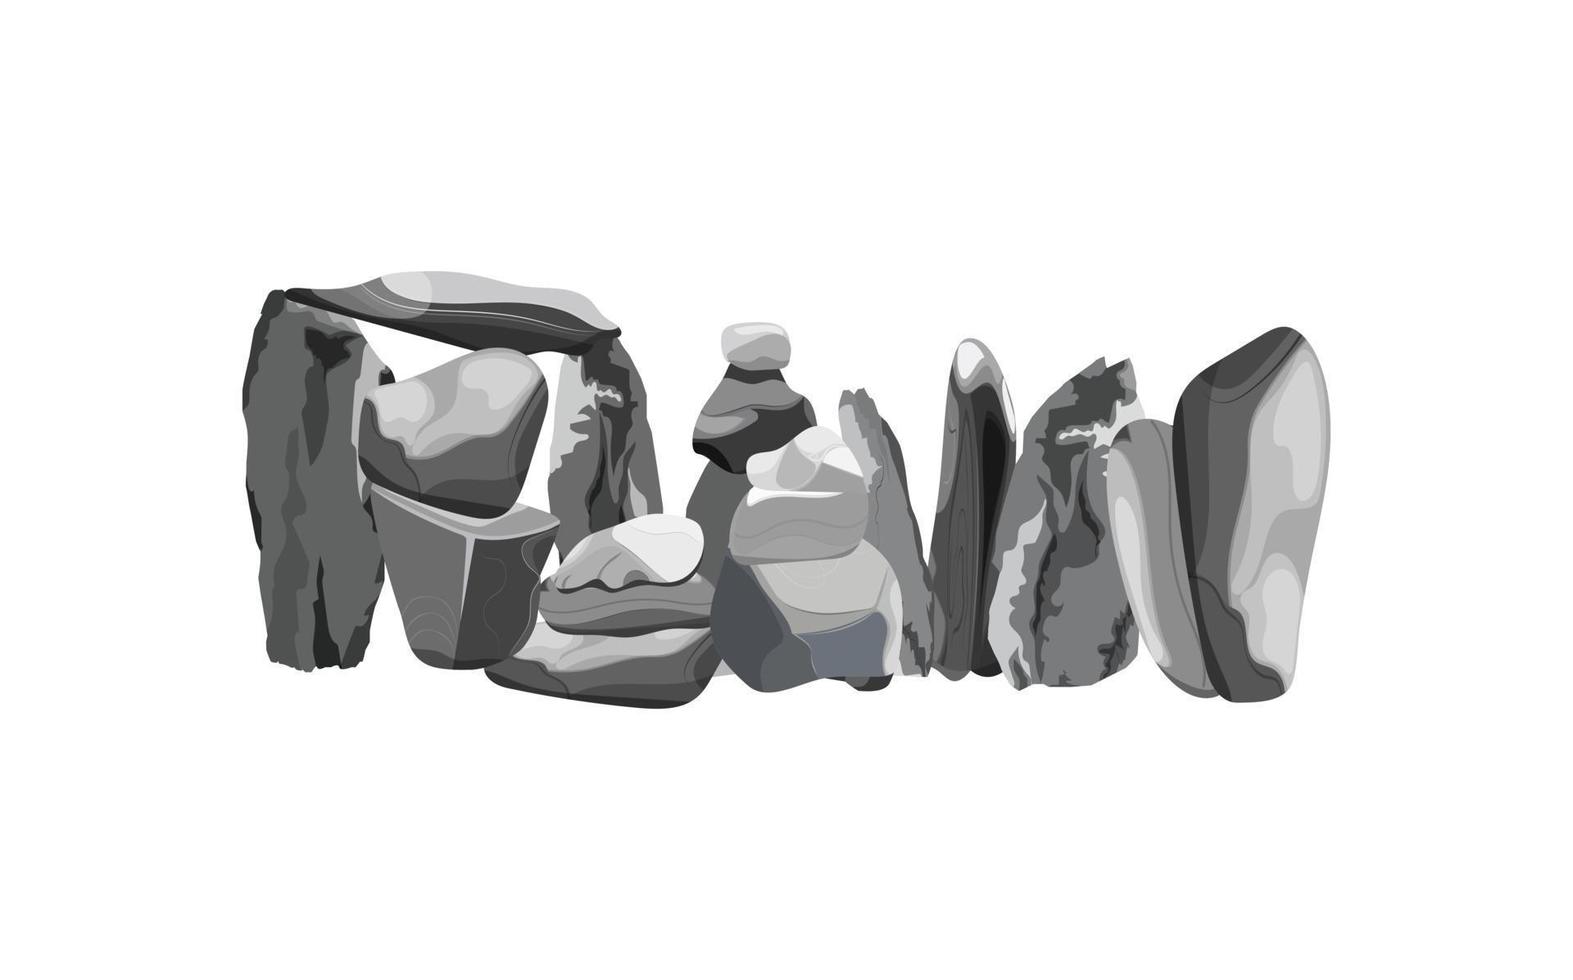 colección de piedras y plantas de diversas formas. guijarros costeros, adoquines, grava, minerales y formaciones geológicas. fragmentos de roca, cantos rodados y material de construcción. vector